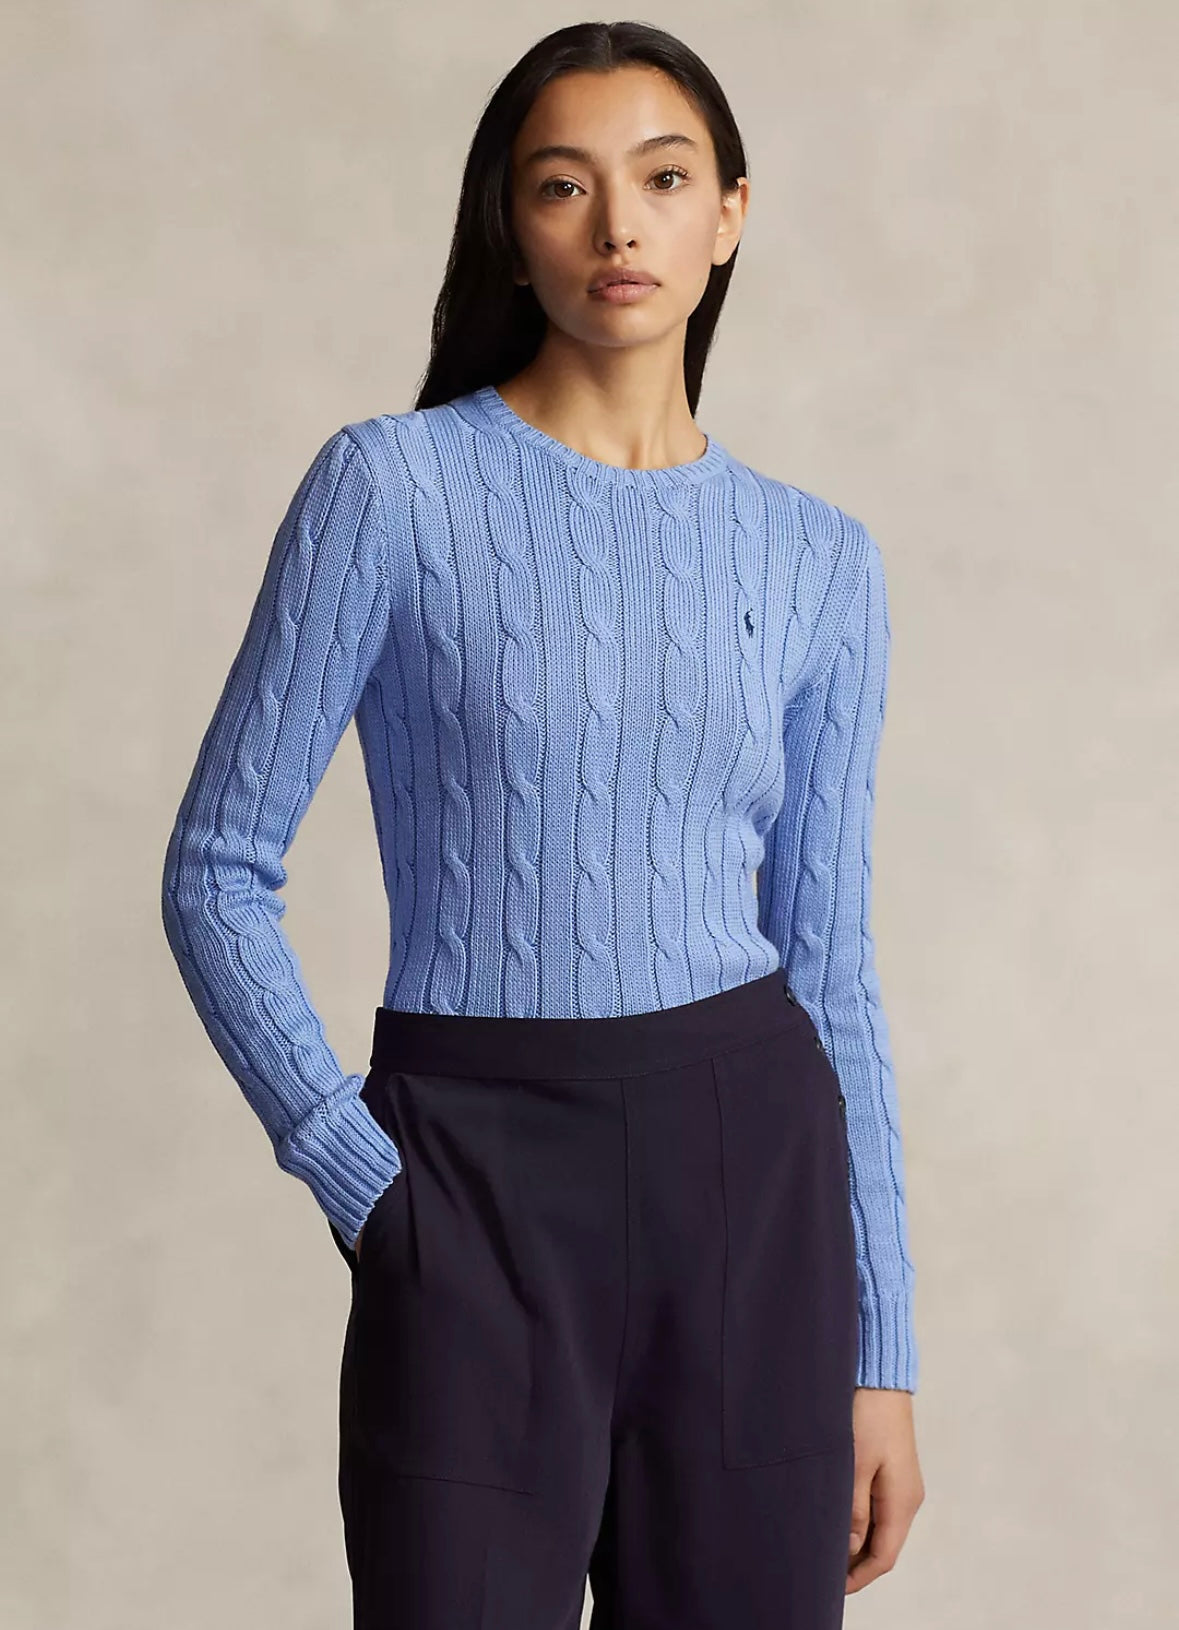 Polo Ralph Lauren Julianna sweater - New Litchfield Blue